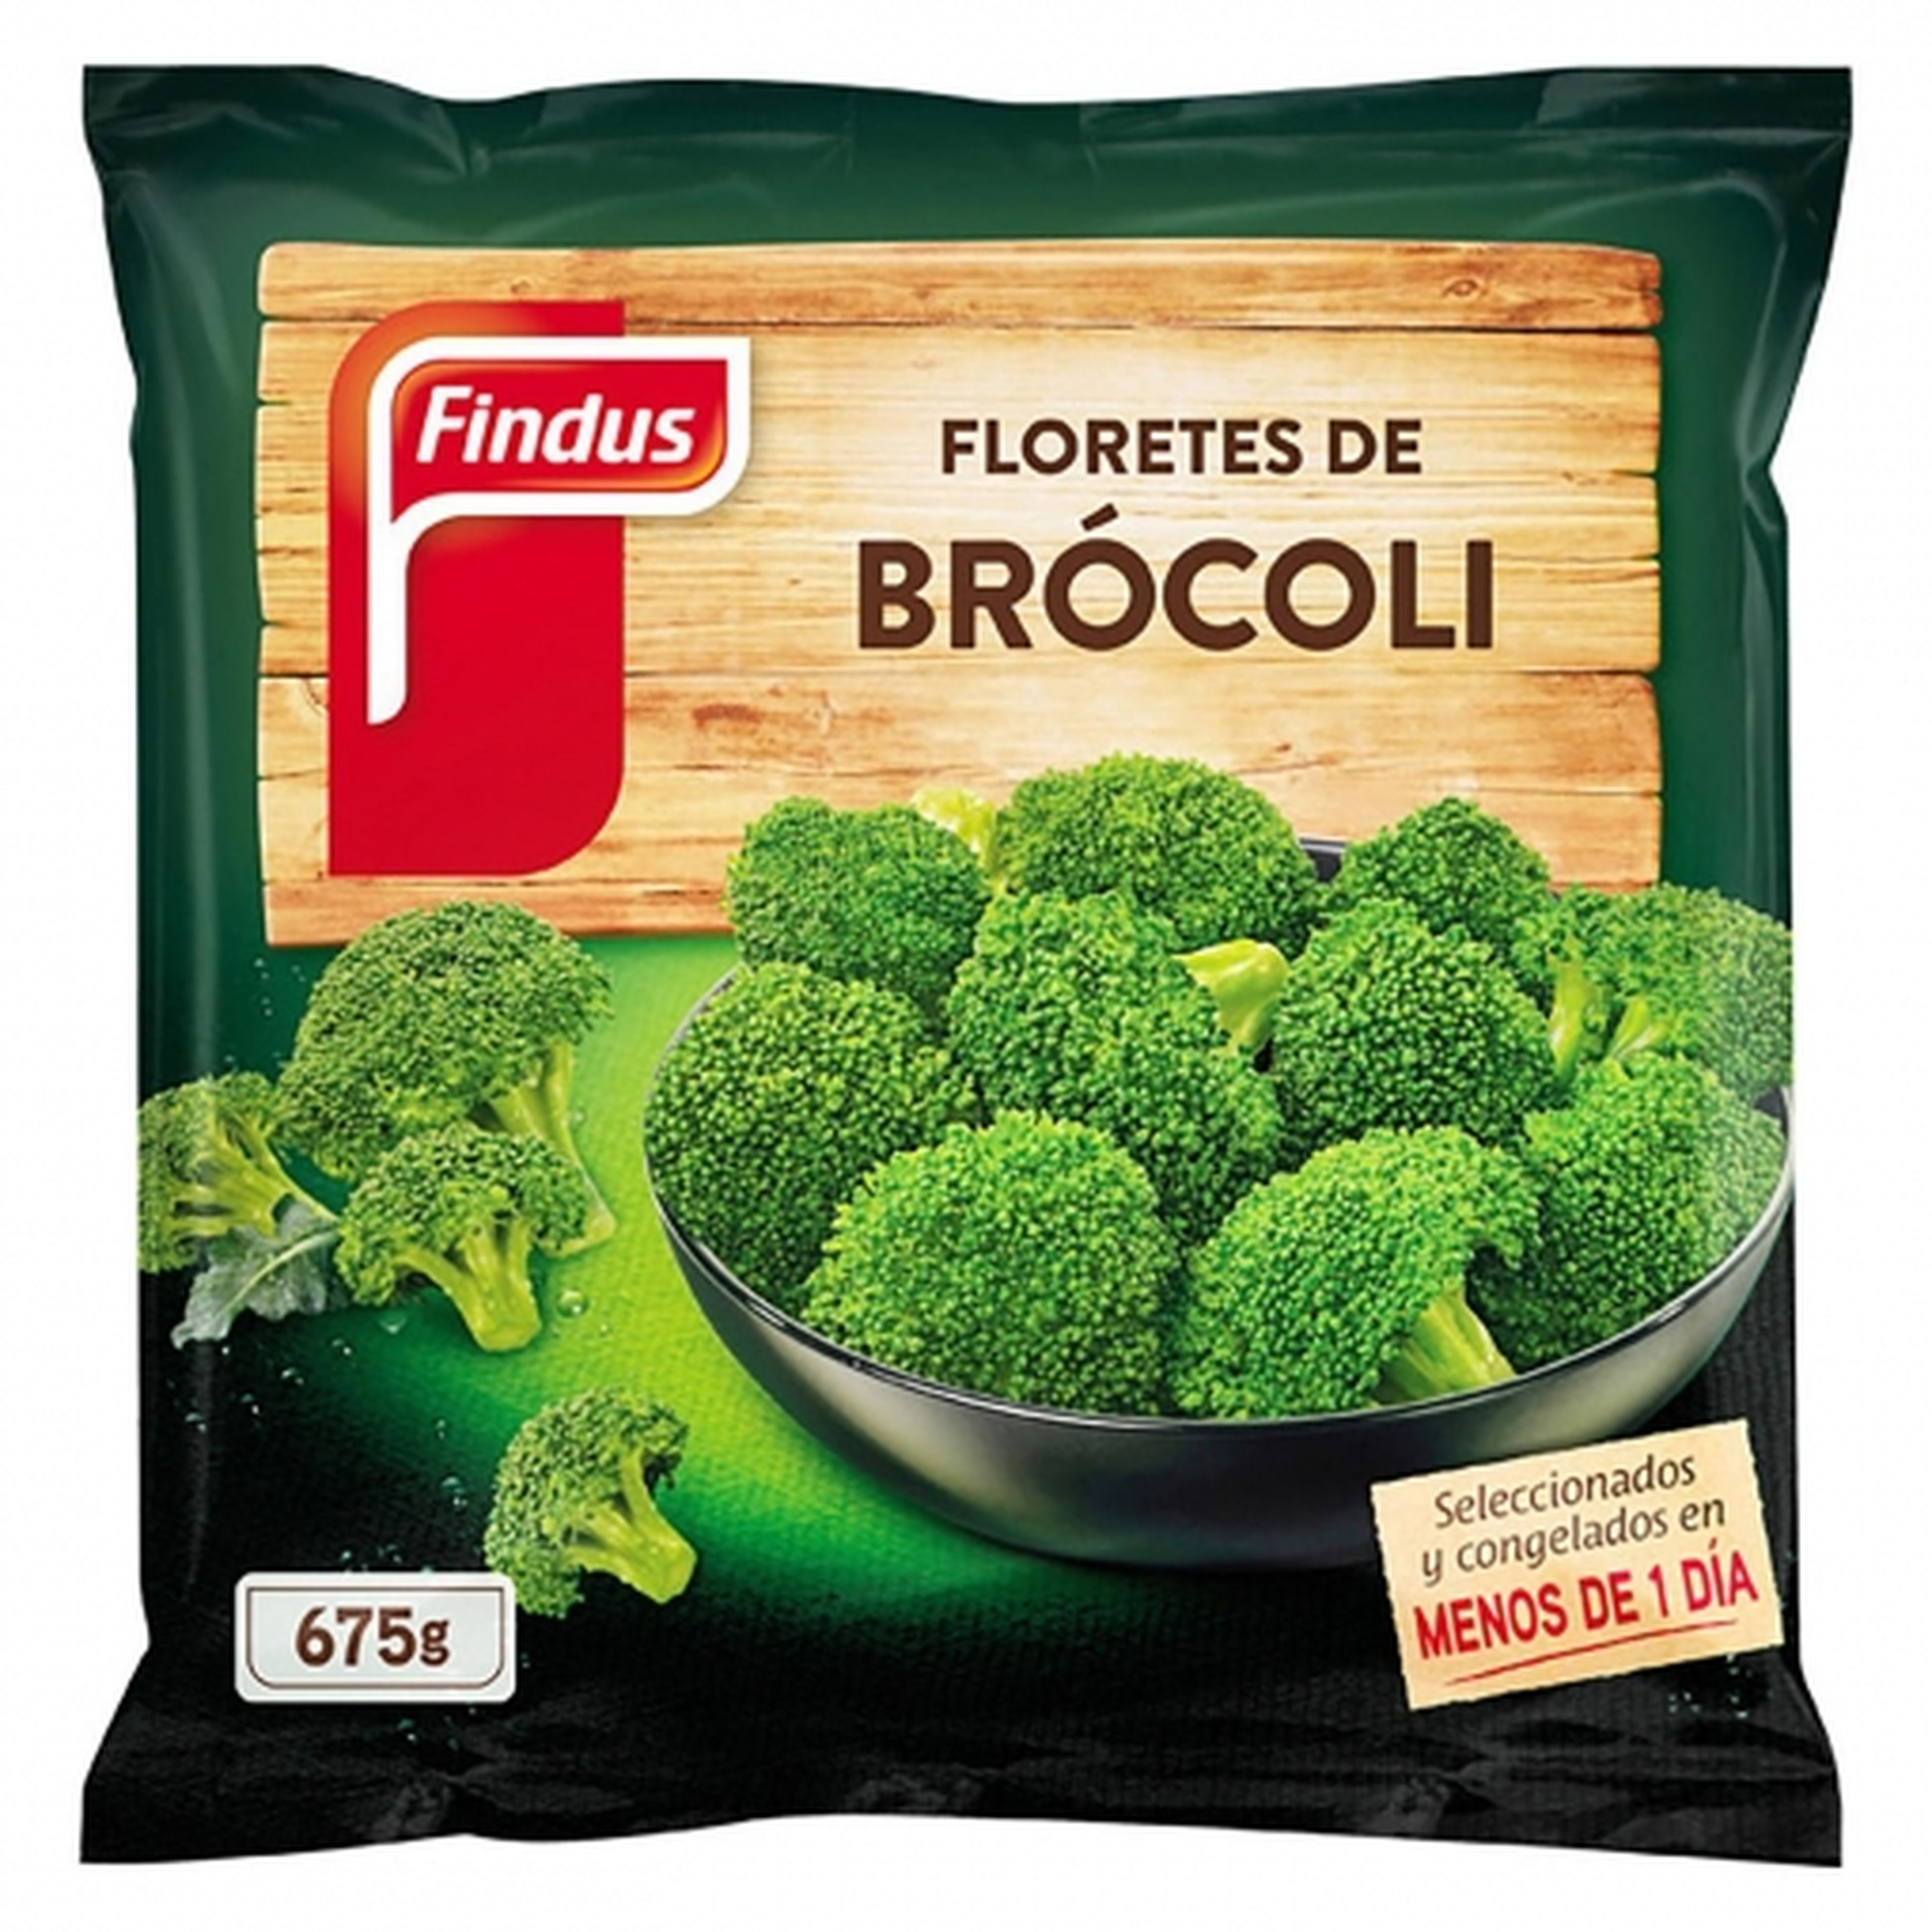 Floretes de brócoli Findus